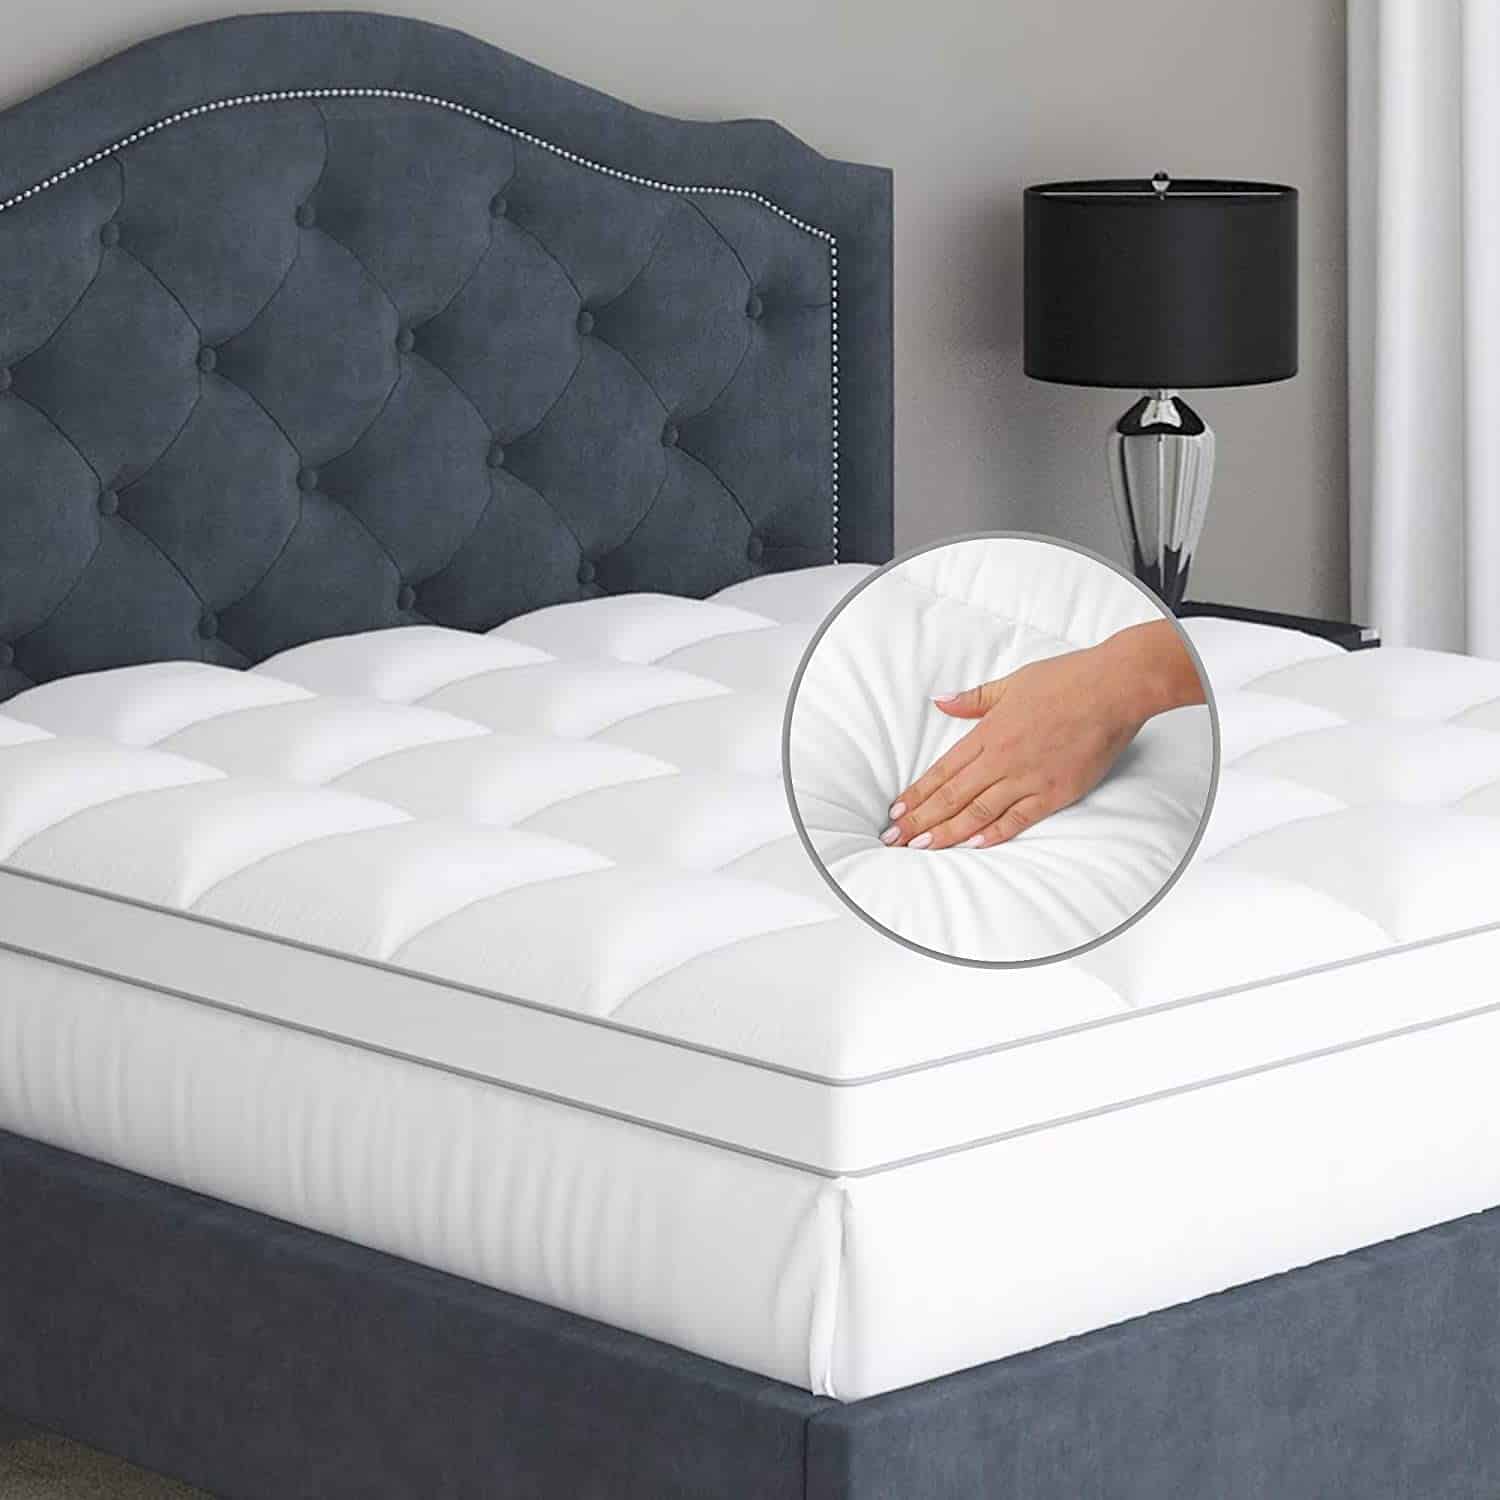 Queen Size Bed Topper Cover Pillow Top Mattress Pad for Mattress Memory Foam 